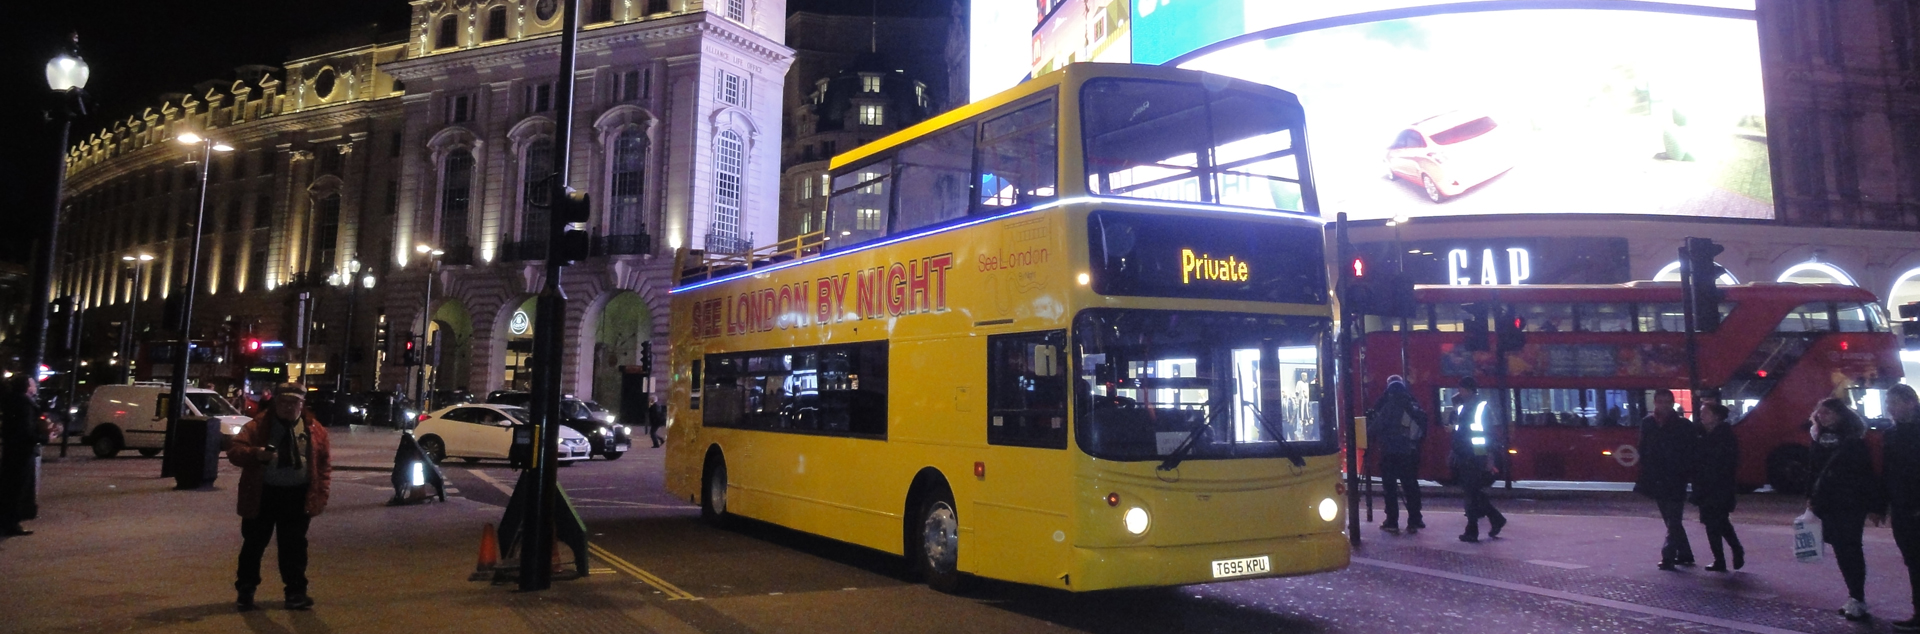 night bus tour in london